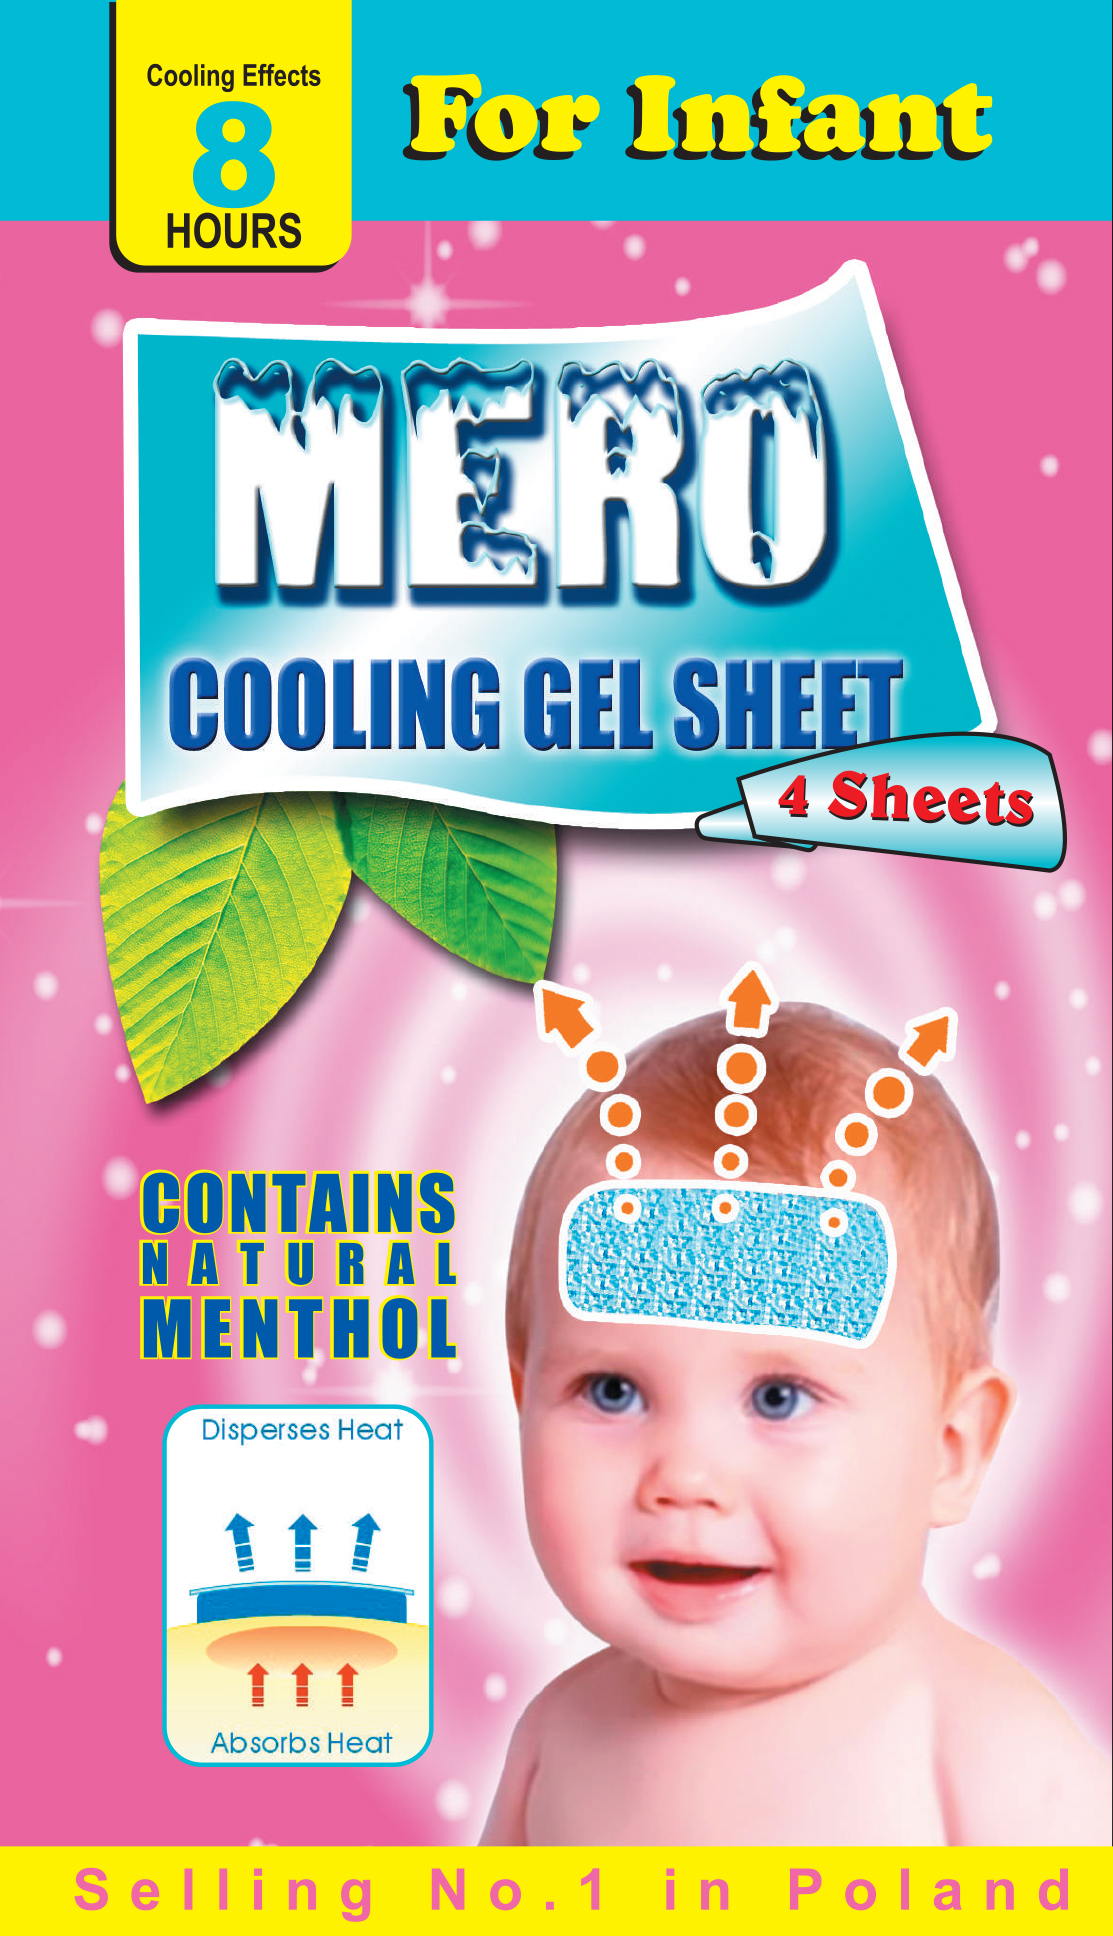 Infant Cooling Gel Sheet